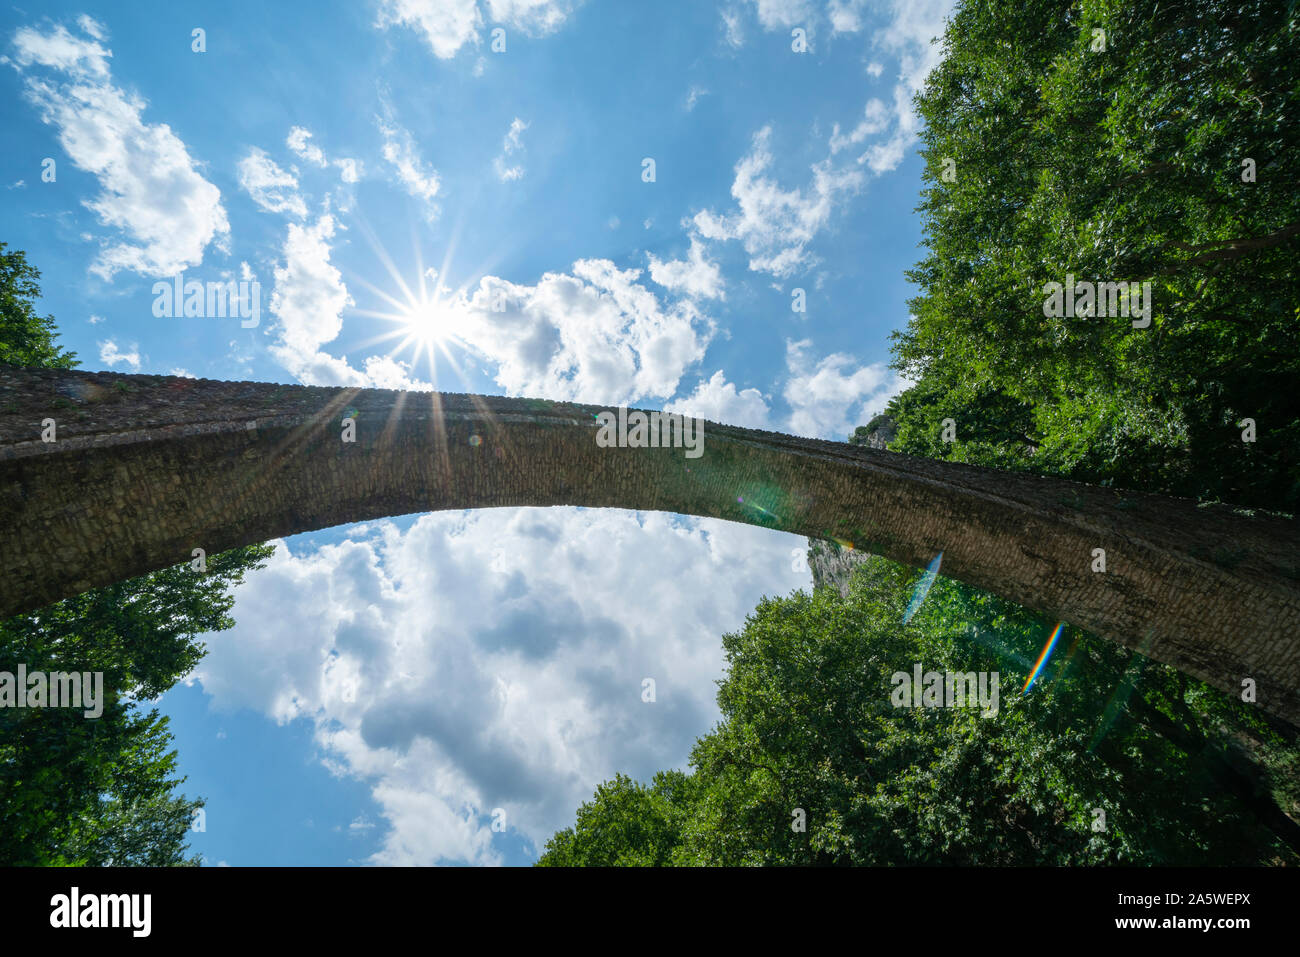 Al di sotto di pietra storica unica arcata del ponte pedonale alla ricerca fino al cielo a Zagori in montagne in Grecia centrale. Foto Stock